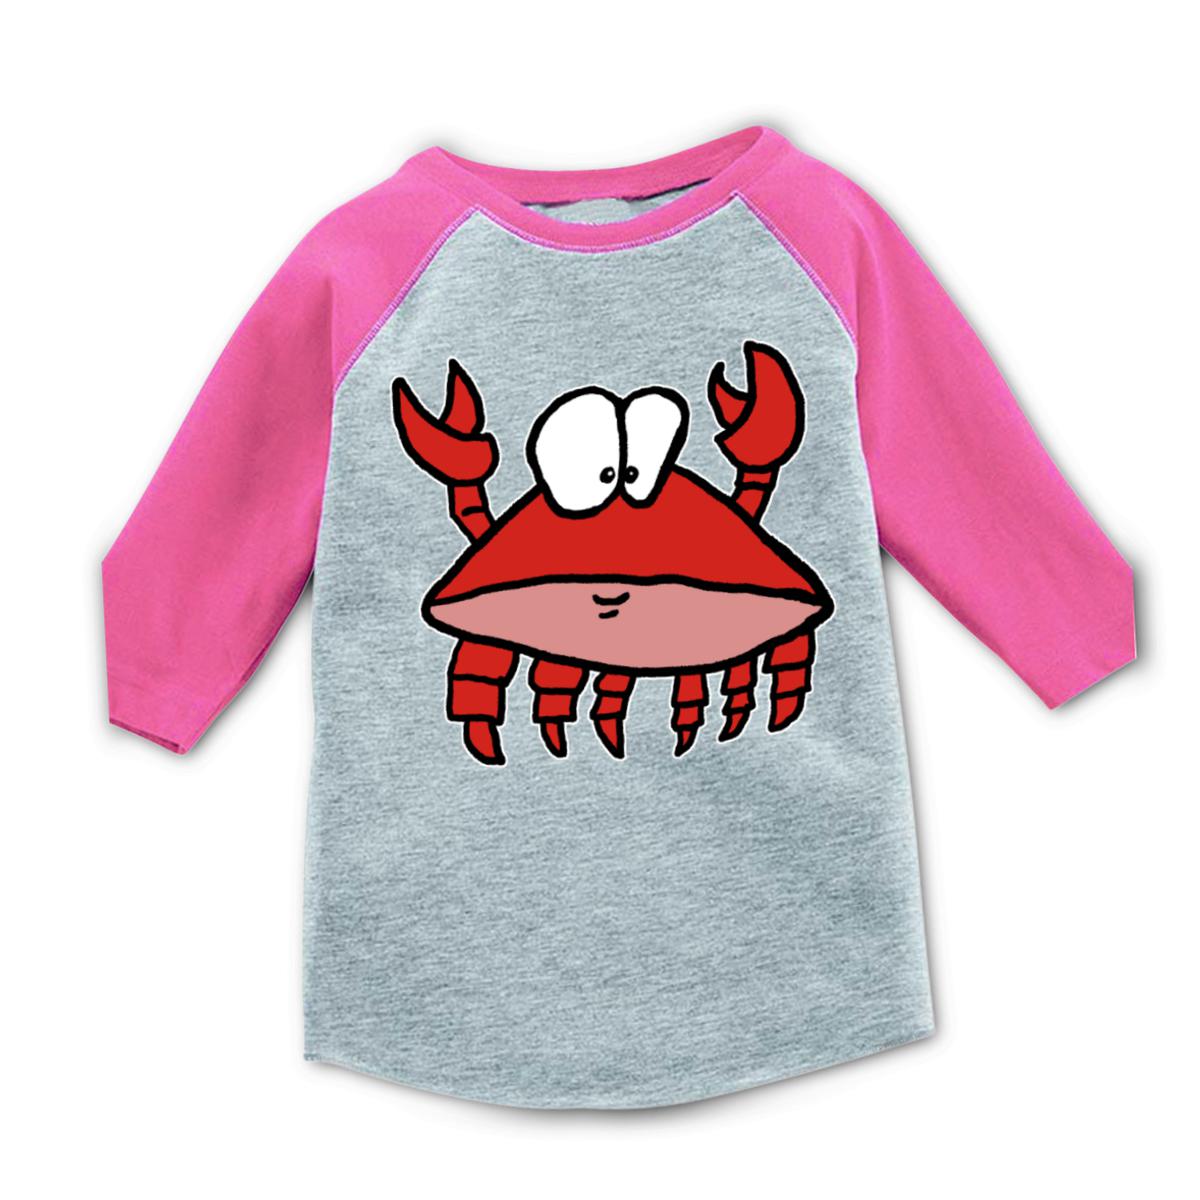 Crab 2.0 Kid's Raglan Tee Small heather-pink